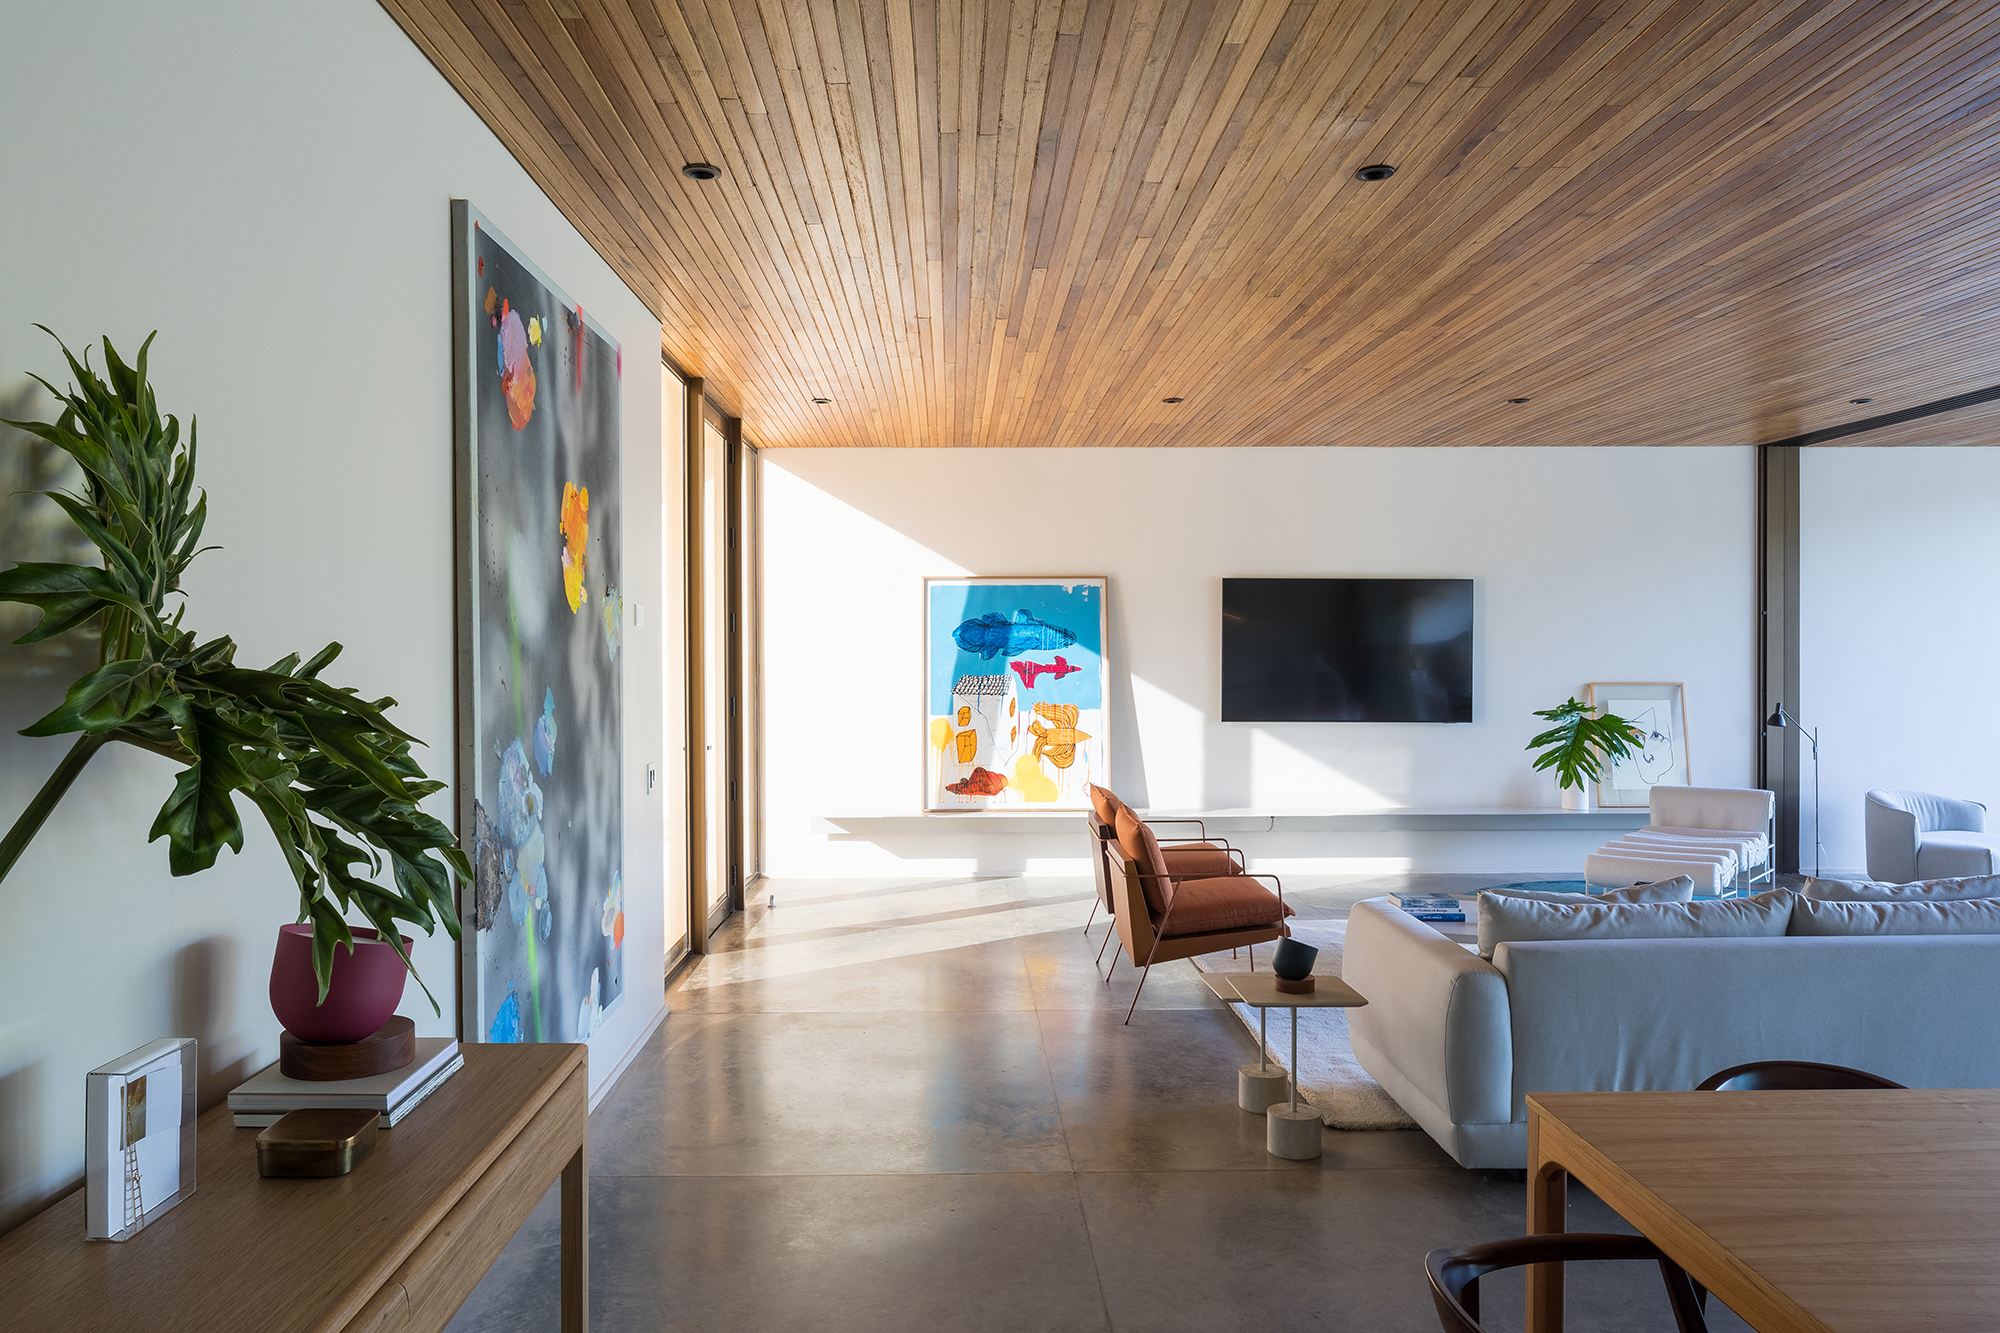 Dois volumes sobrepostos compõem esta casa de 500 m² em Brasília. Projeto de Bloco Arquitetos. Na foto, sala de tv com quadros e sofá.